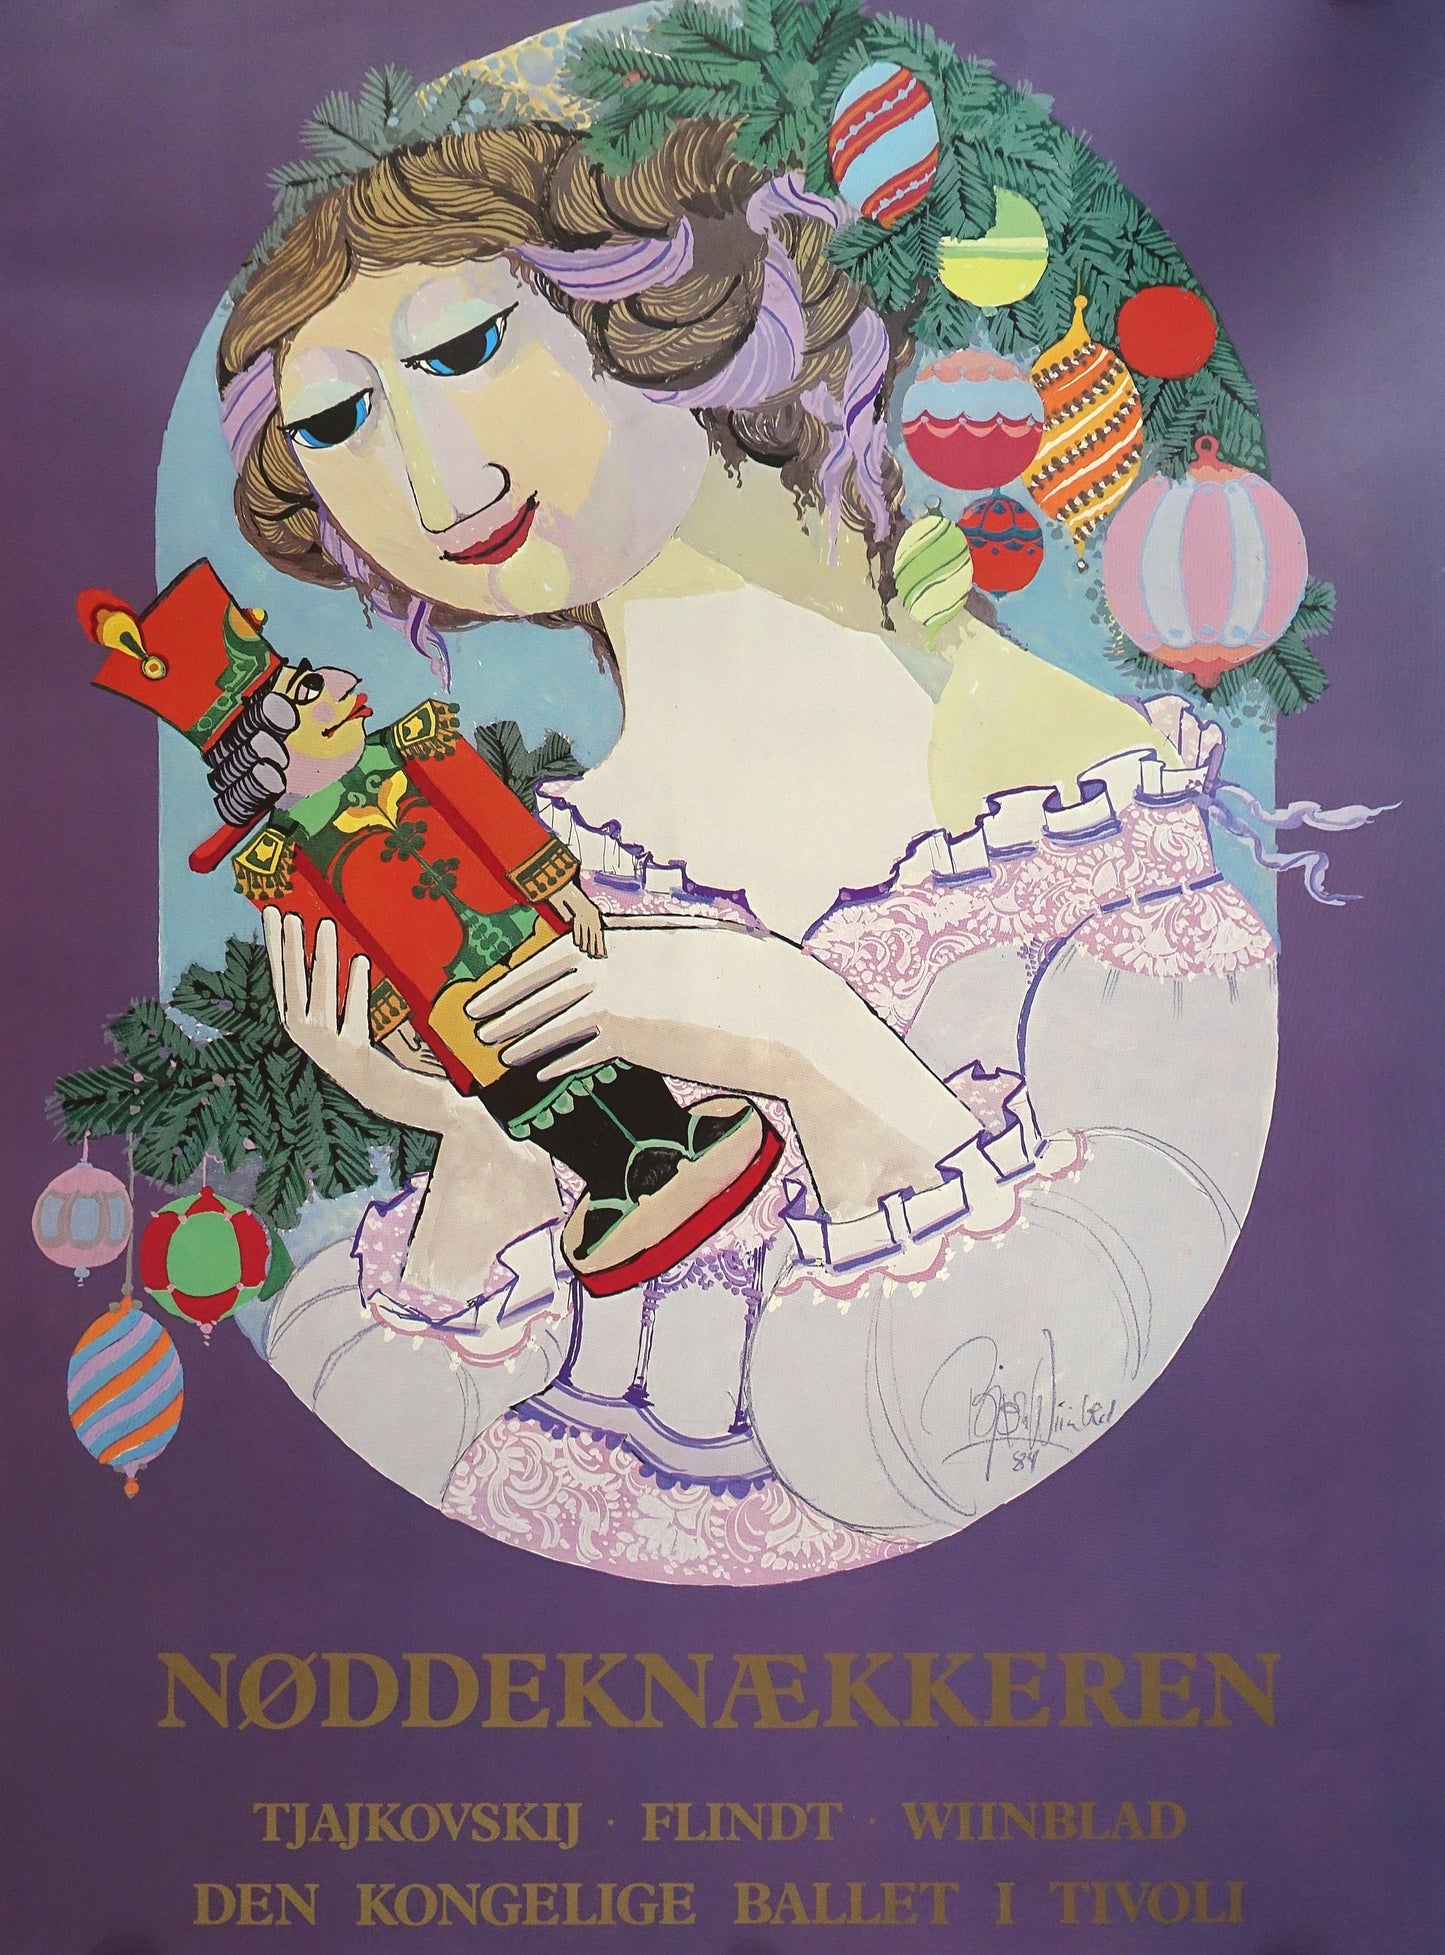 1984 Bjørn Wiinblad Artwork for The Nutcracker and the Royal Danish Ballet in Tivoli - Original Vintage Poster